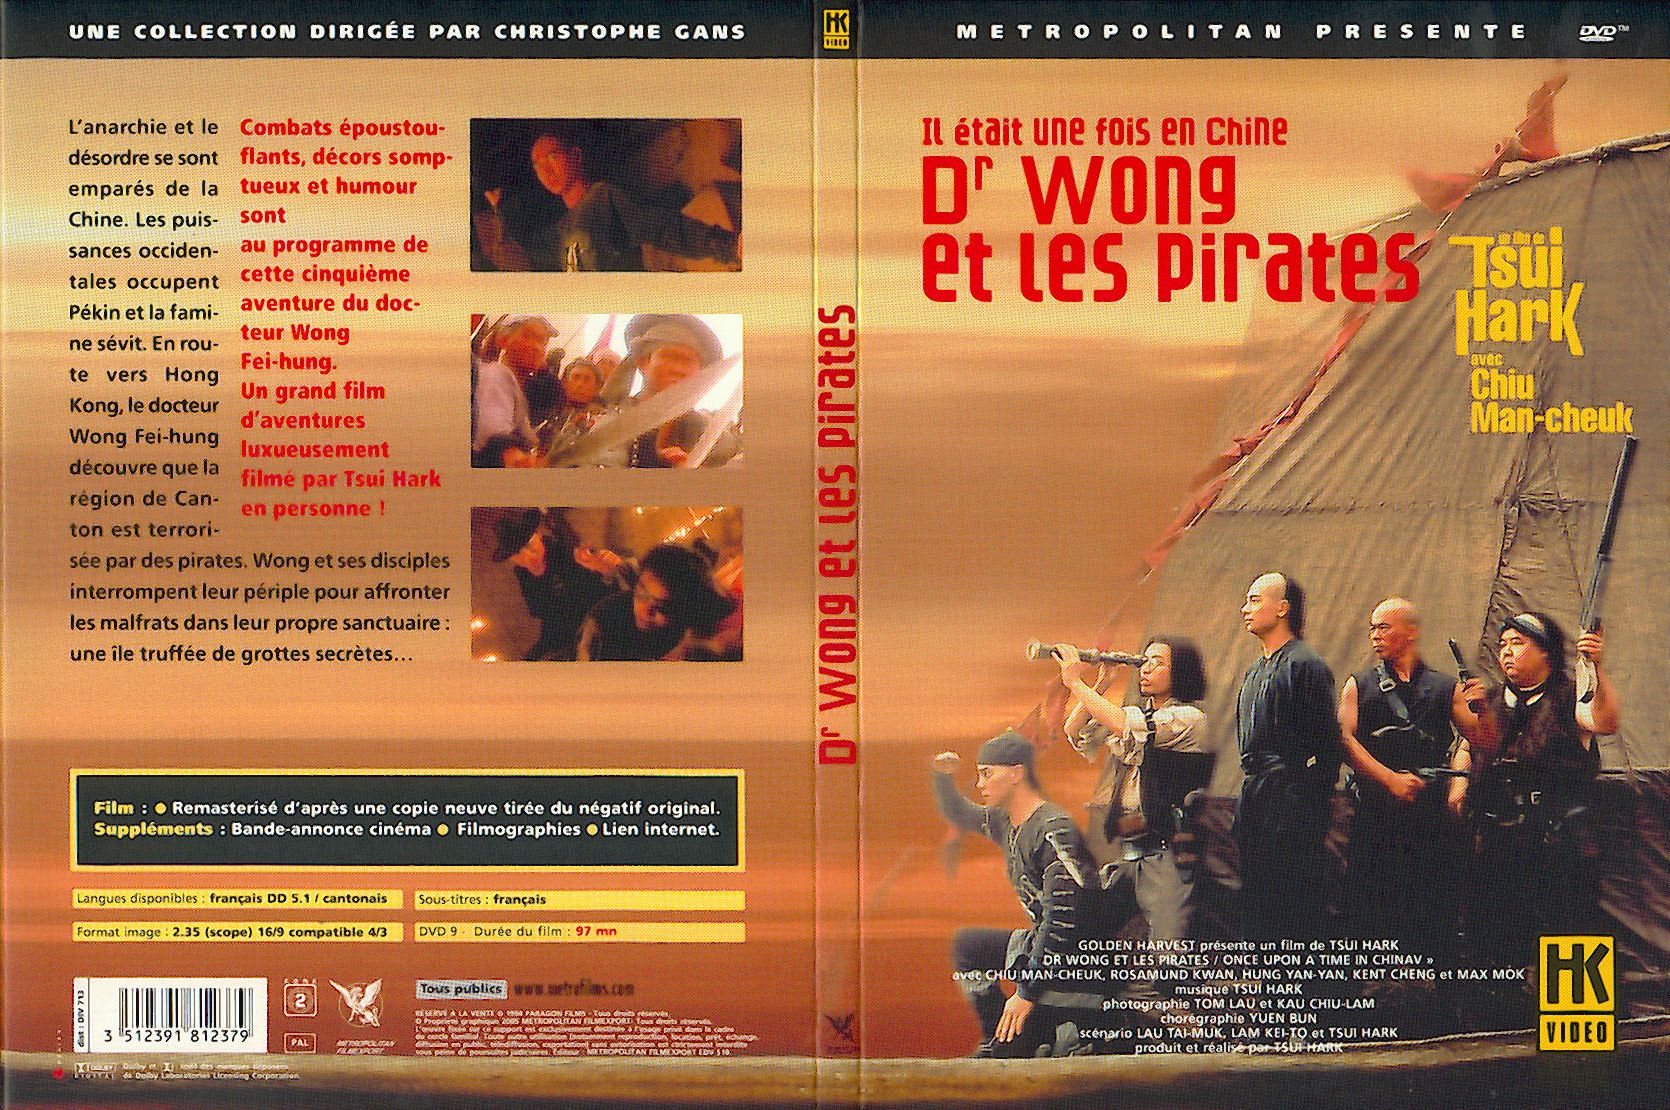 Jaquette DVD Il etait une fois en chine 5 Dr Wong et les pirates